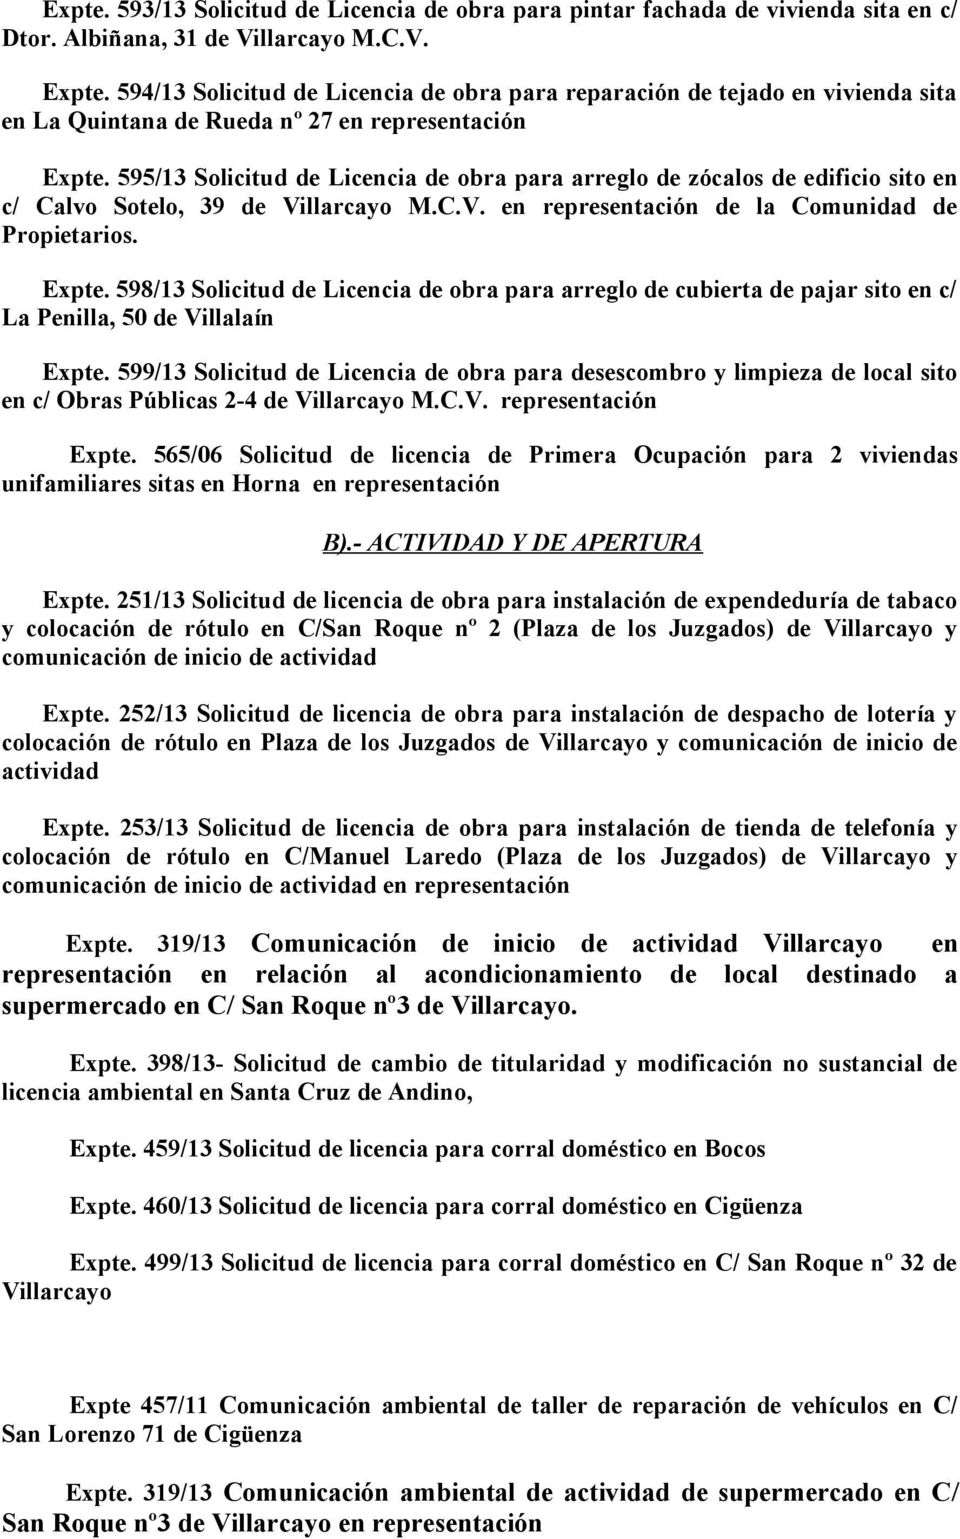 595/13 Solicitud de Licencia de obra para arreglo de zócalos de edificio sito en c/ Calvo Sotelo, 39 de Villarcayo M.C.V. en representación de la Comunidad de Propietarios. Expte.